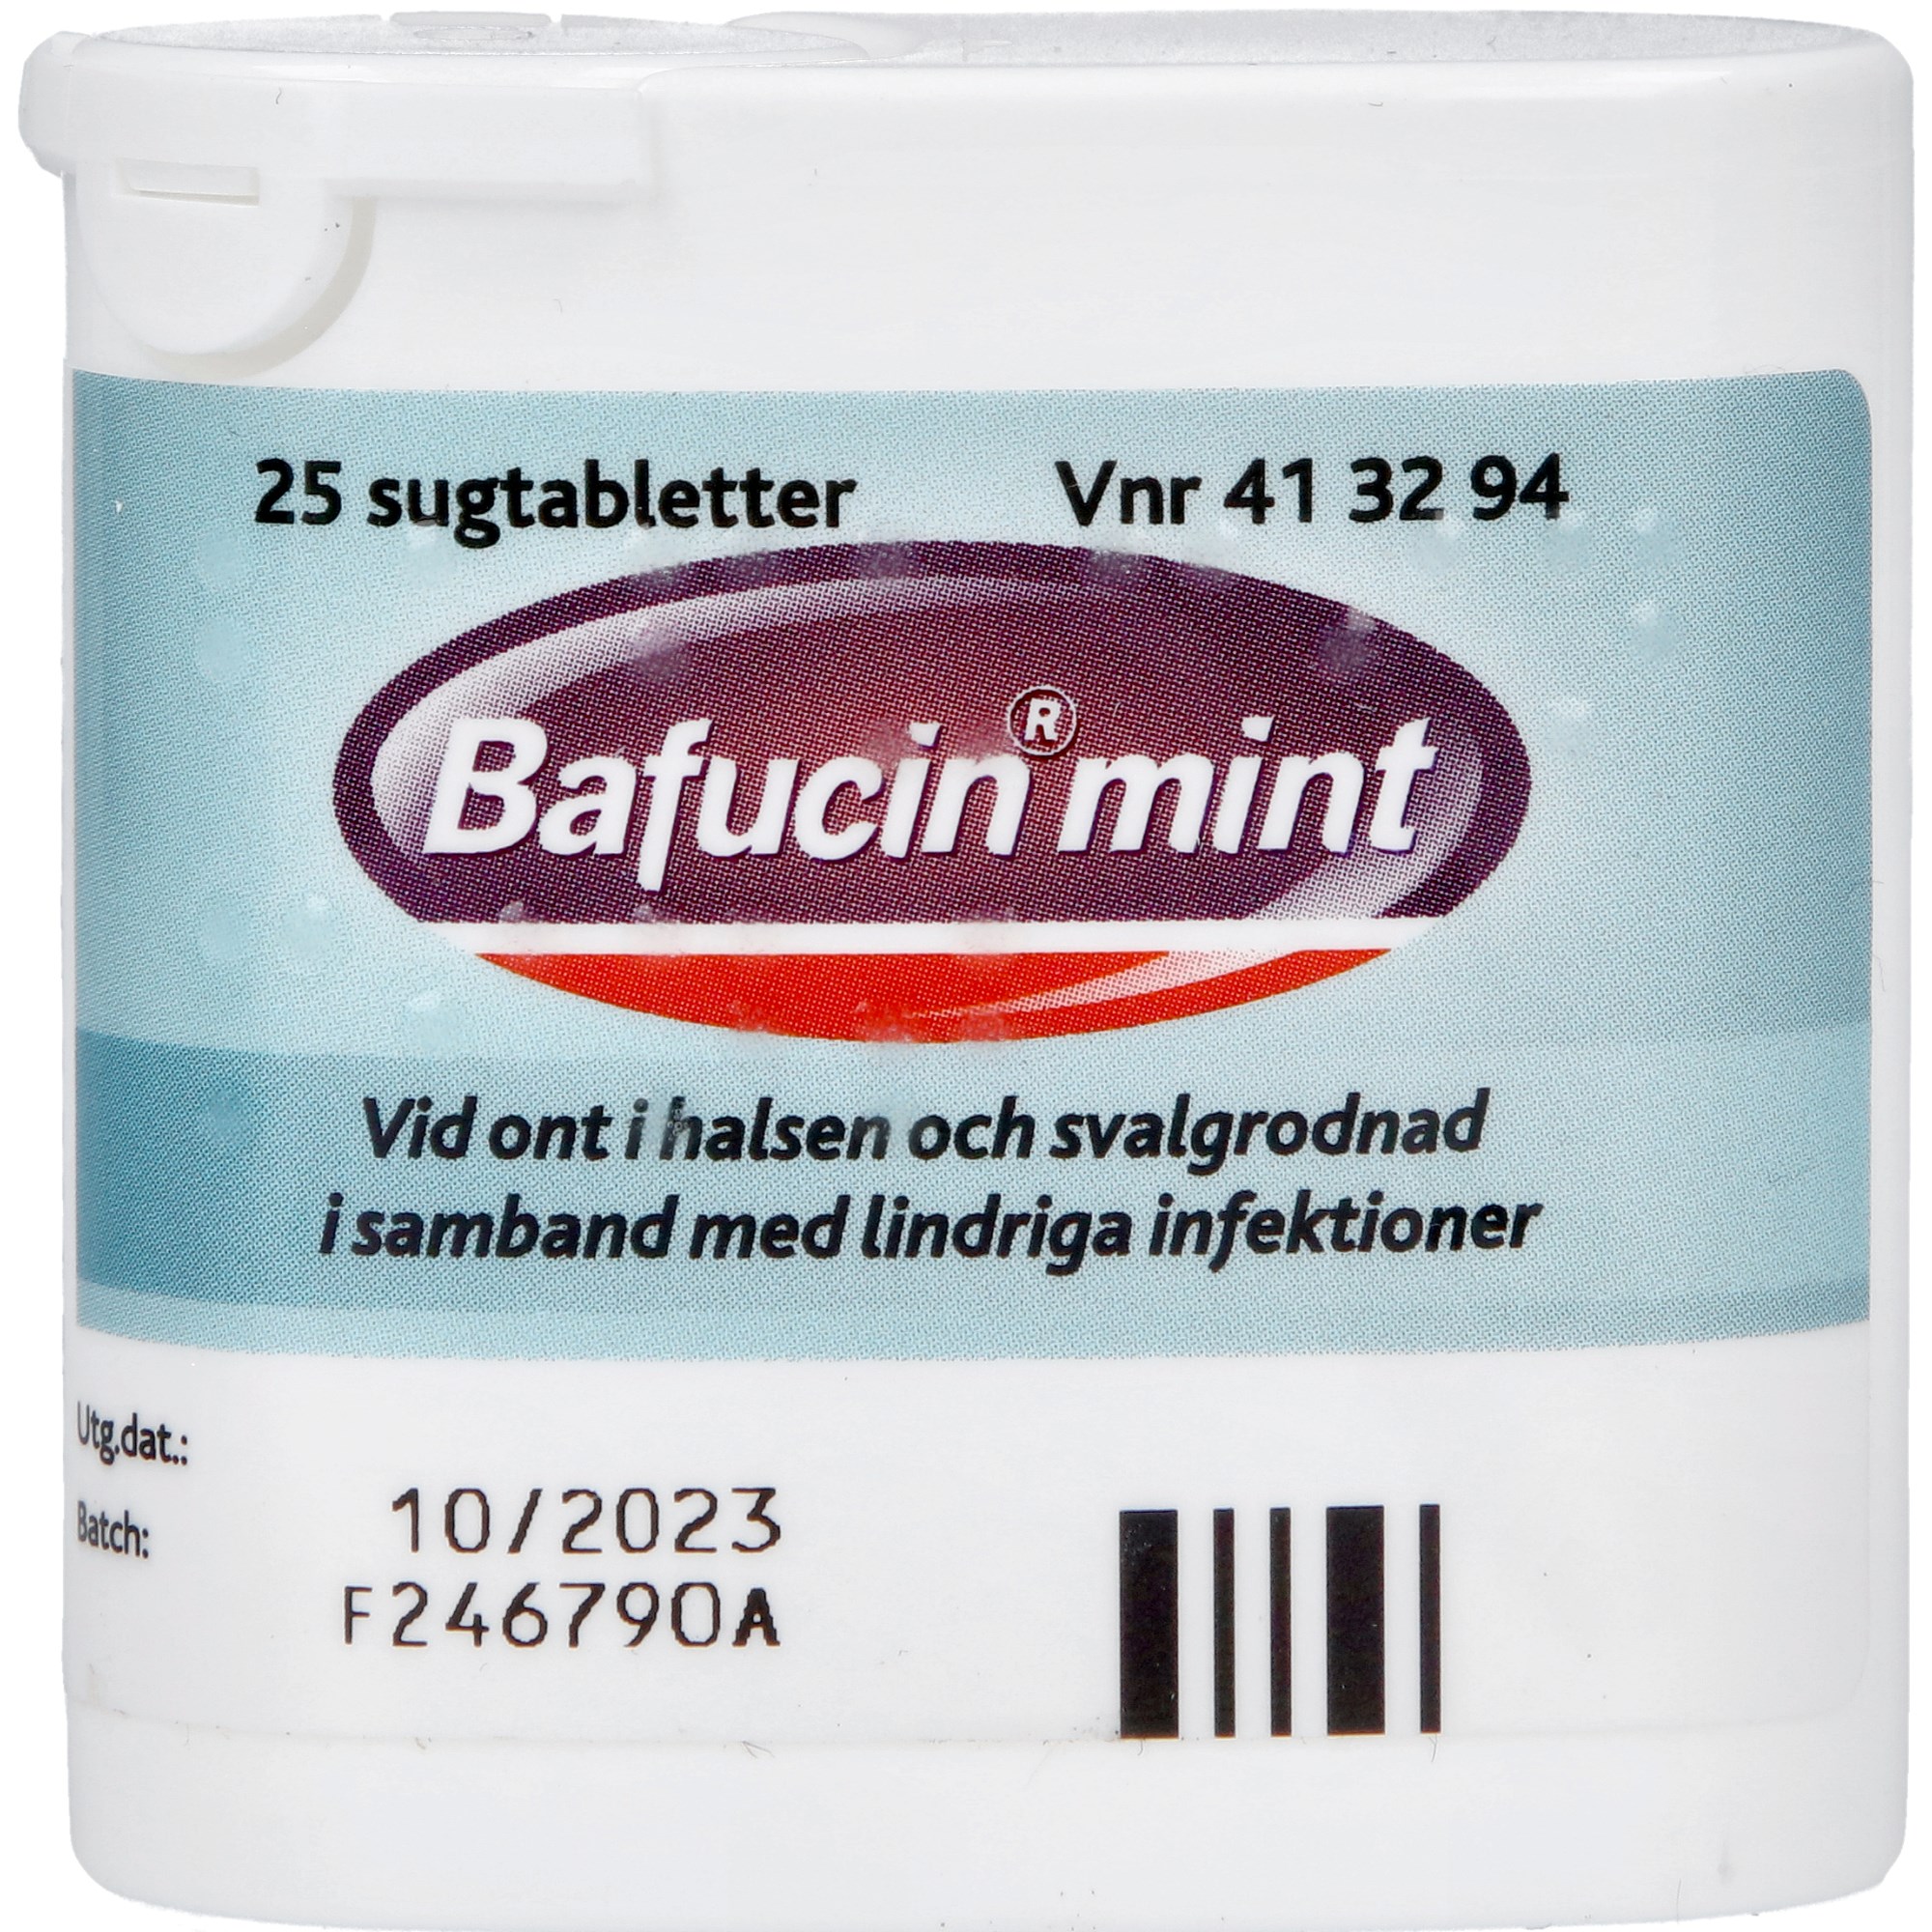 Bafucin